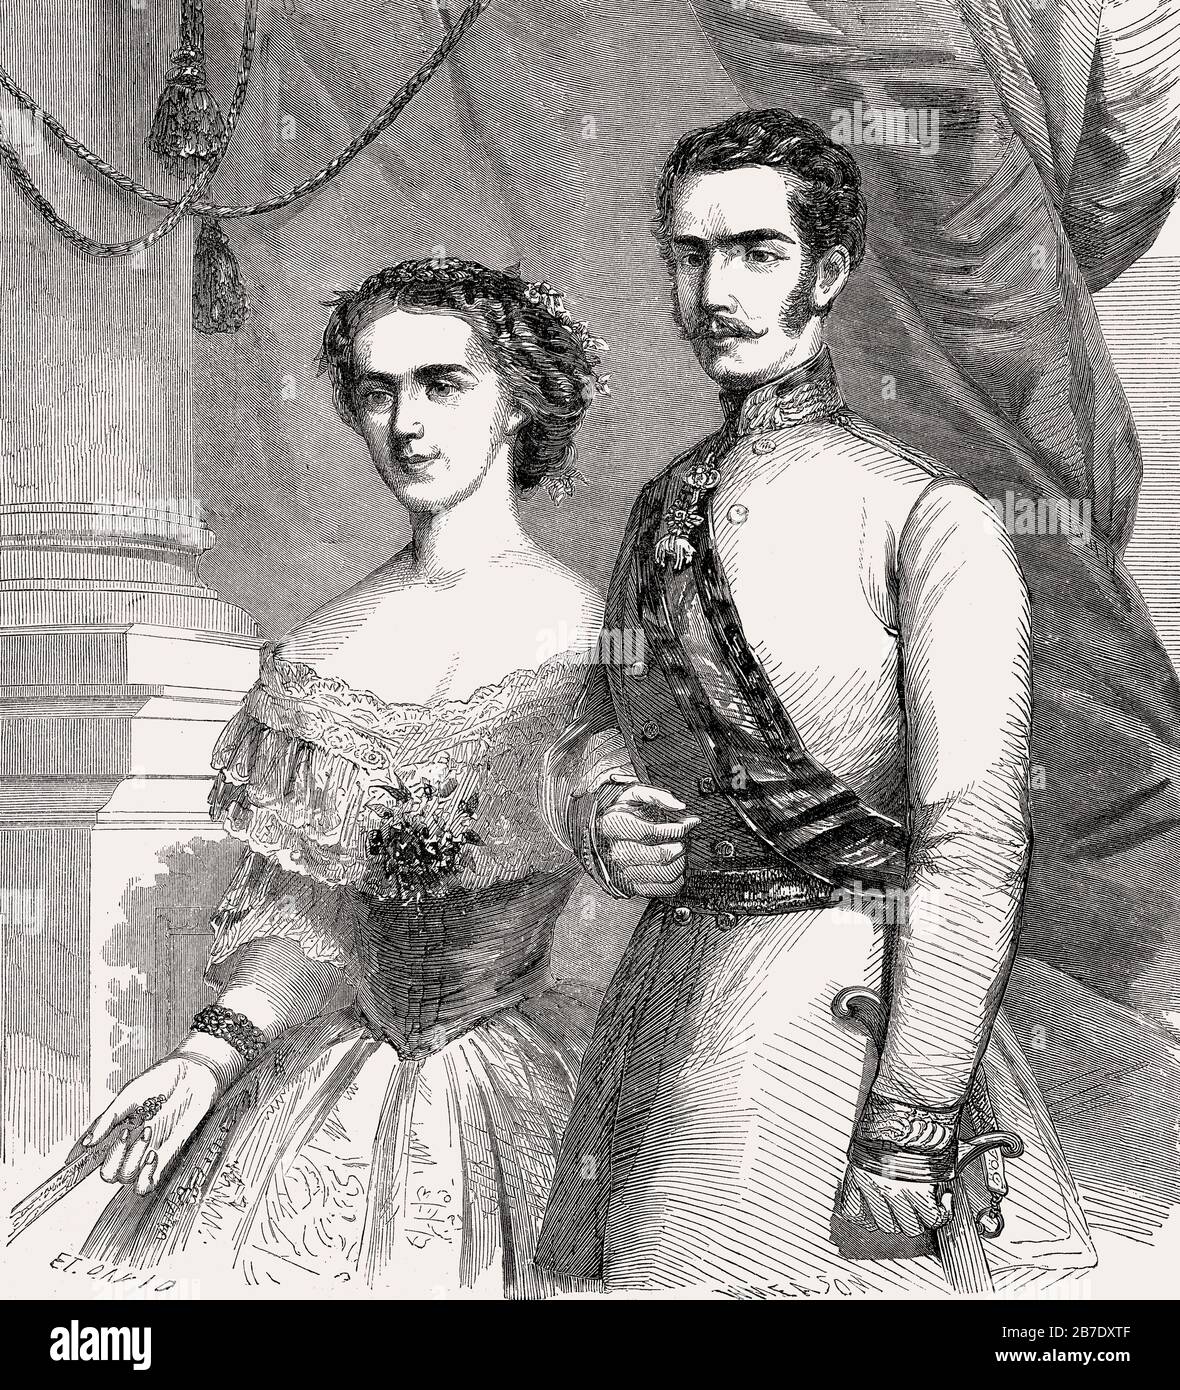 Franz Joseph I, Emperador de Austria, con la emperatriz Elisabeth de Austria, llamada Sissi, 1857 Foto de stock